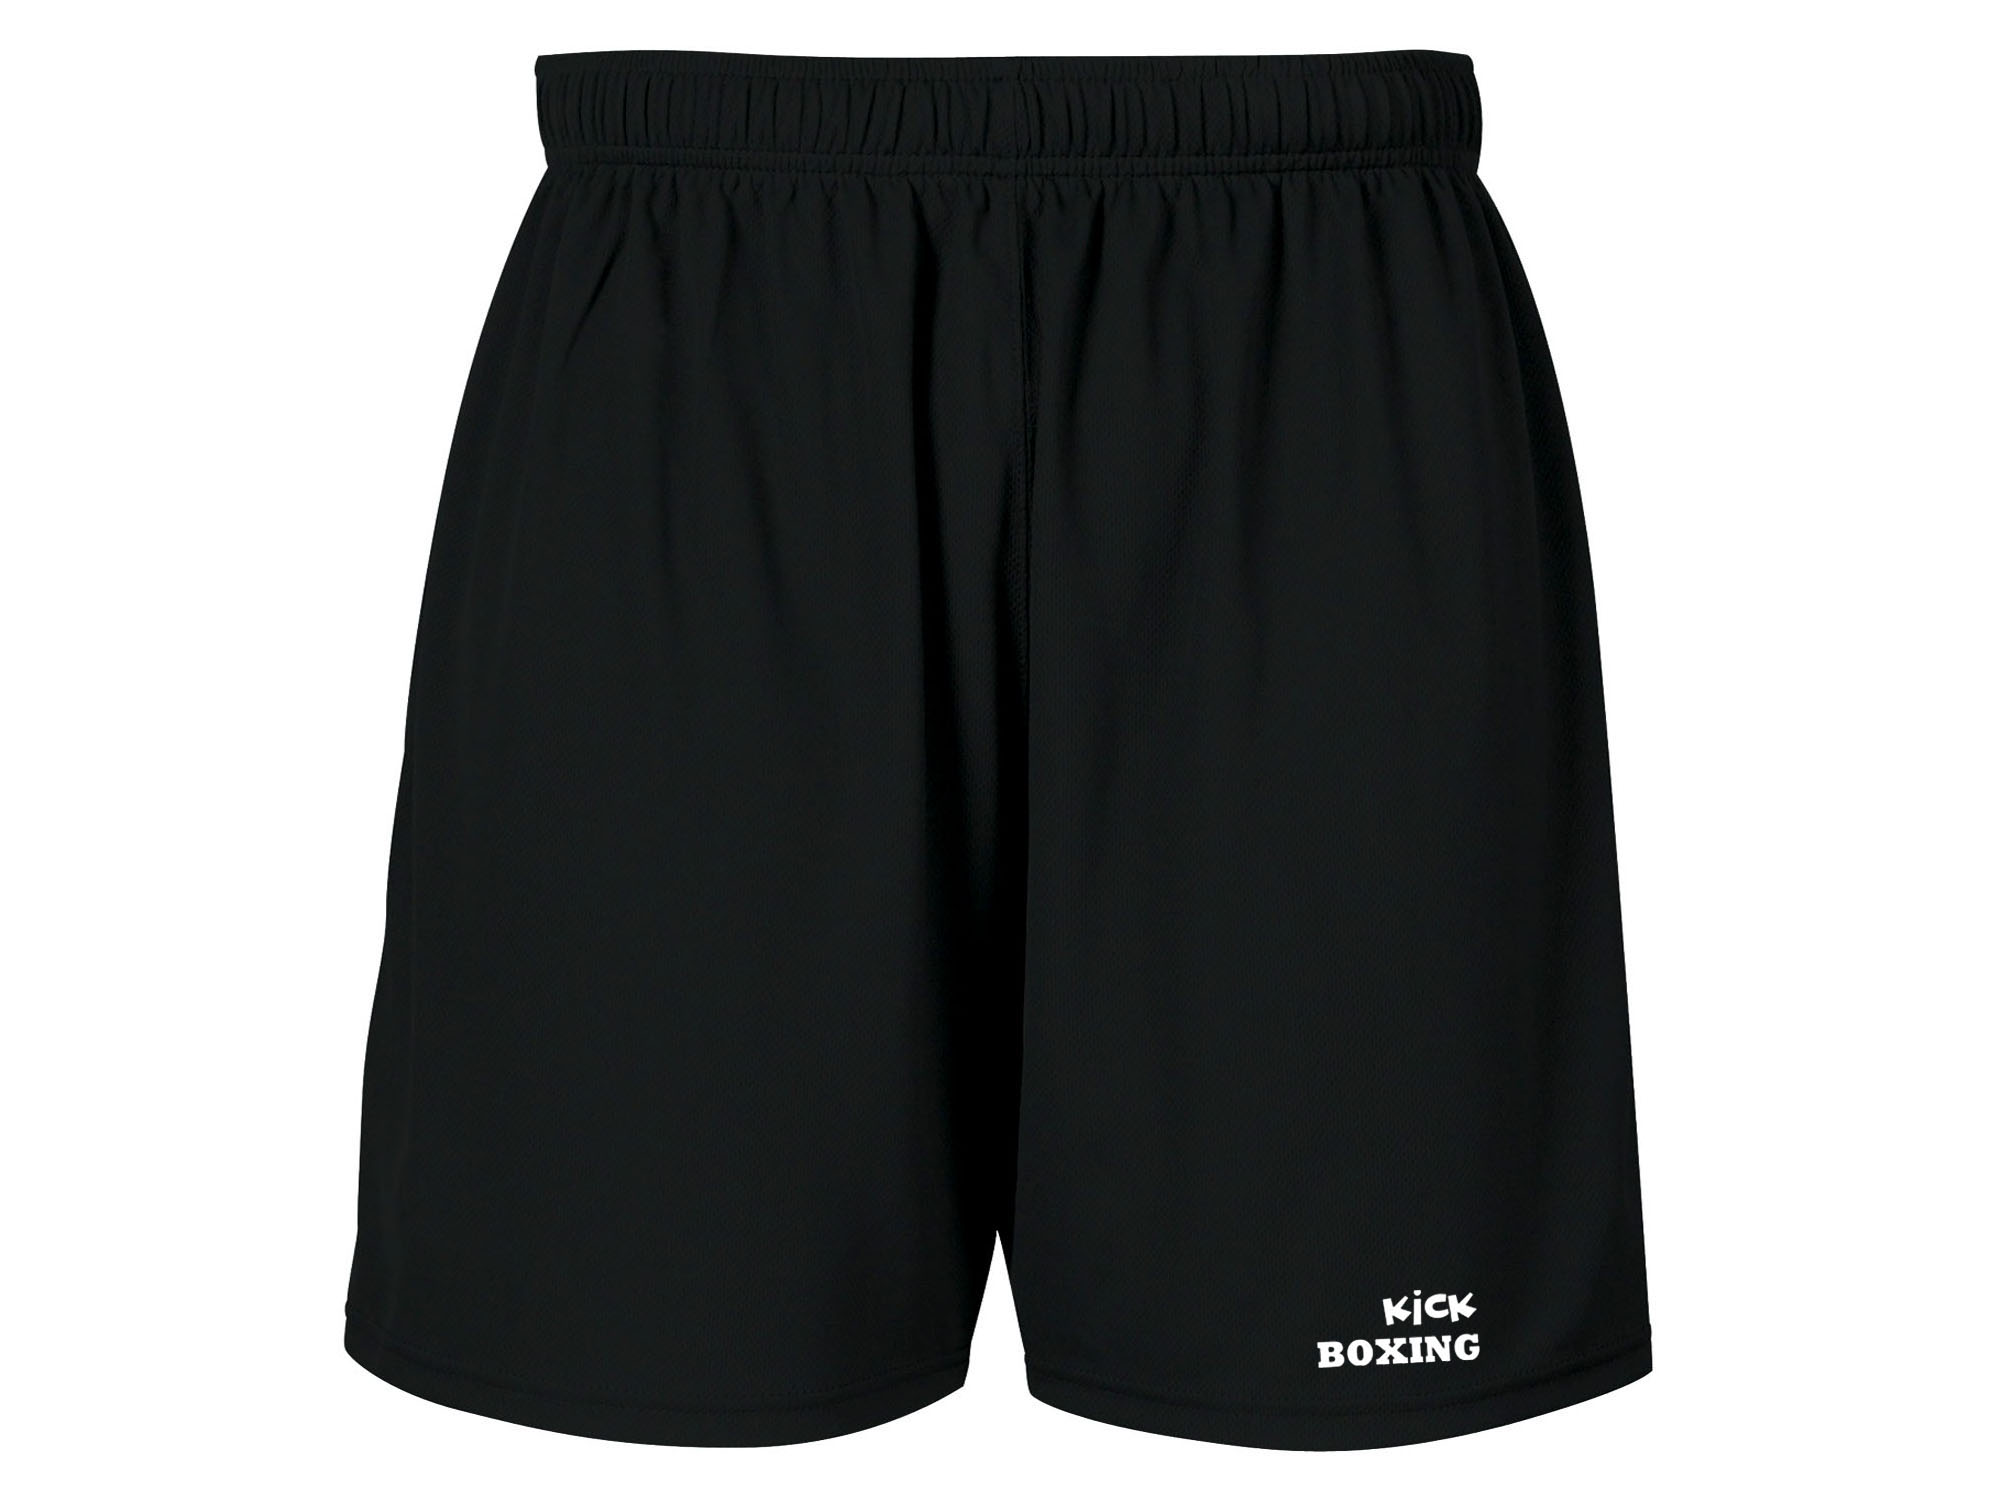 Kickboxing workout sweat proof fabric shorts